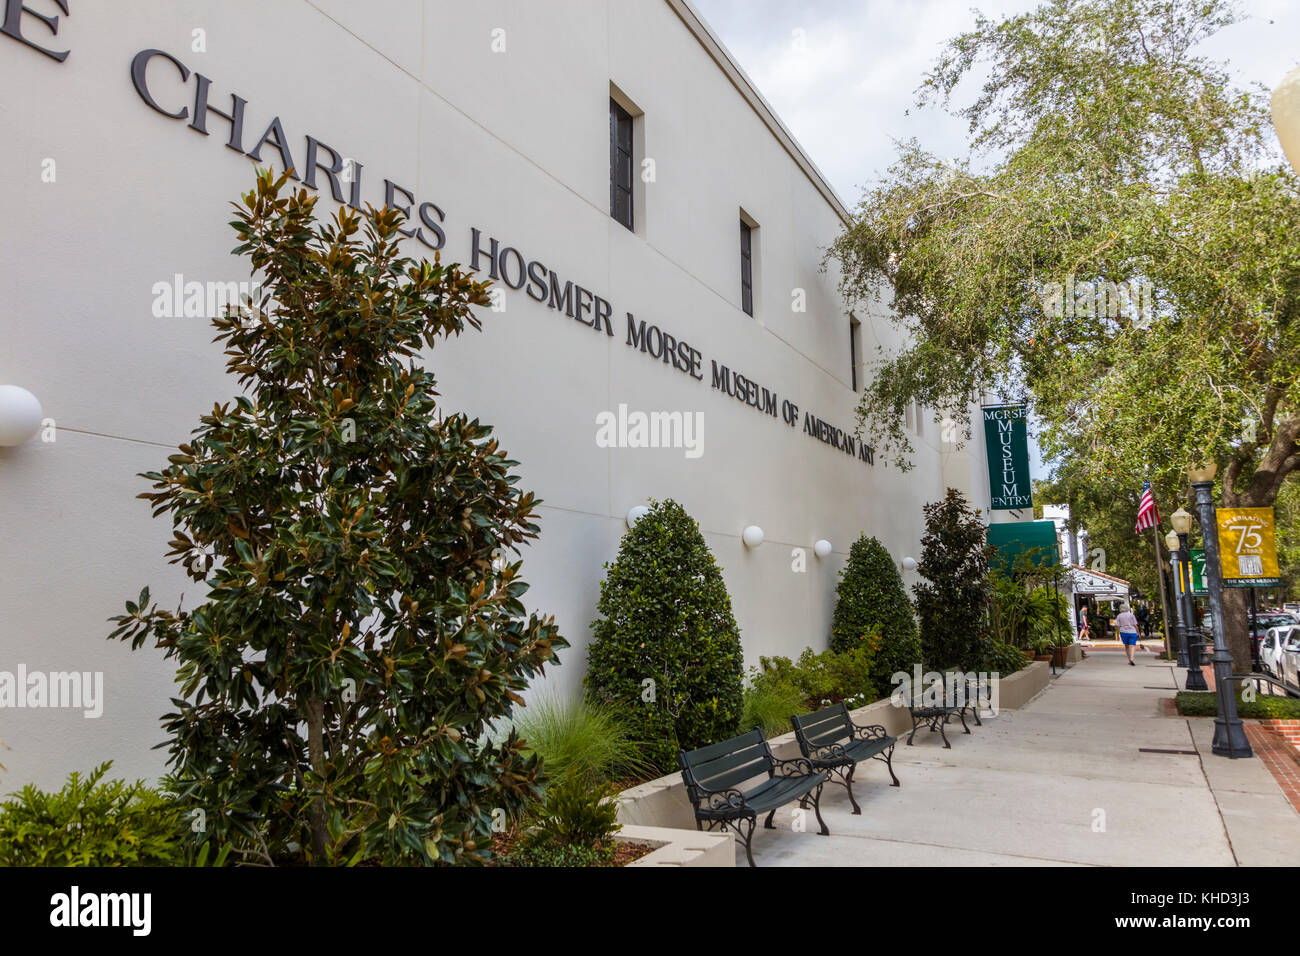 Il Charles hosmer morse Museum of American Art in Park Avenue nella Winter Park Florida negli Stati Uniti Foto Stock